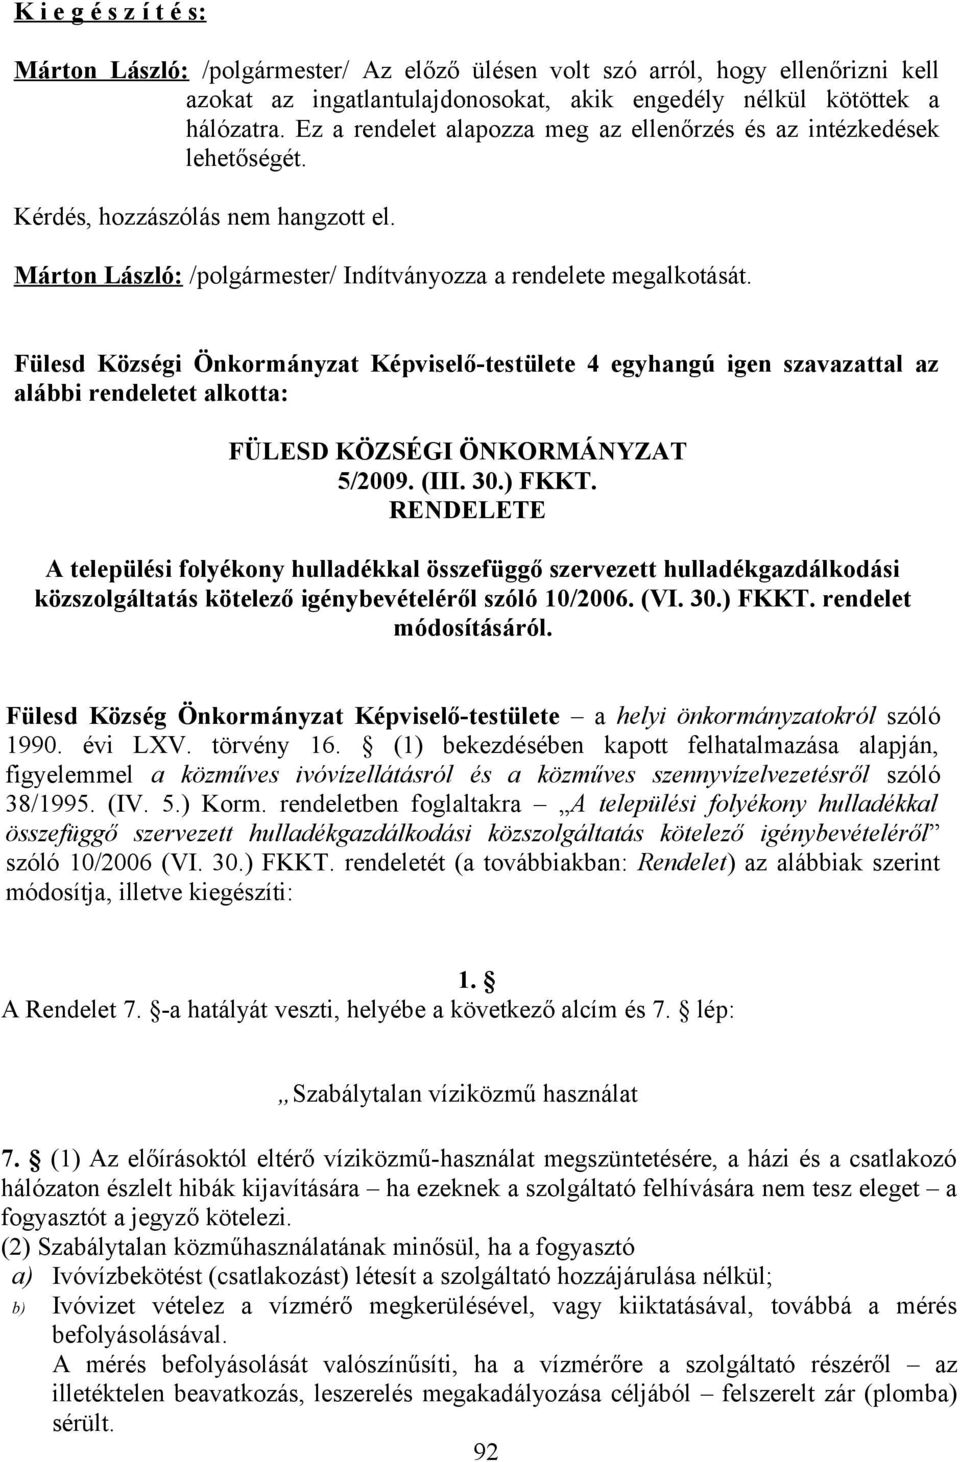 Fülesd Községi Önkormányzat Képviselő-testülete 4 egyhangú igen szavazattal az alábbi rendeletet alkotta: FÜLESD KÖZSÉGI ÖNKORMÁNYZAT 5/2009. (III. 30.) FKKT.